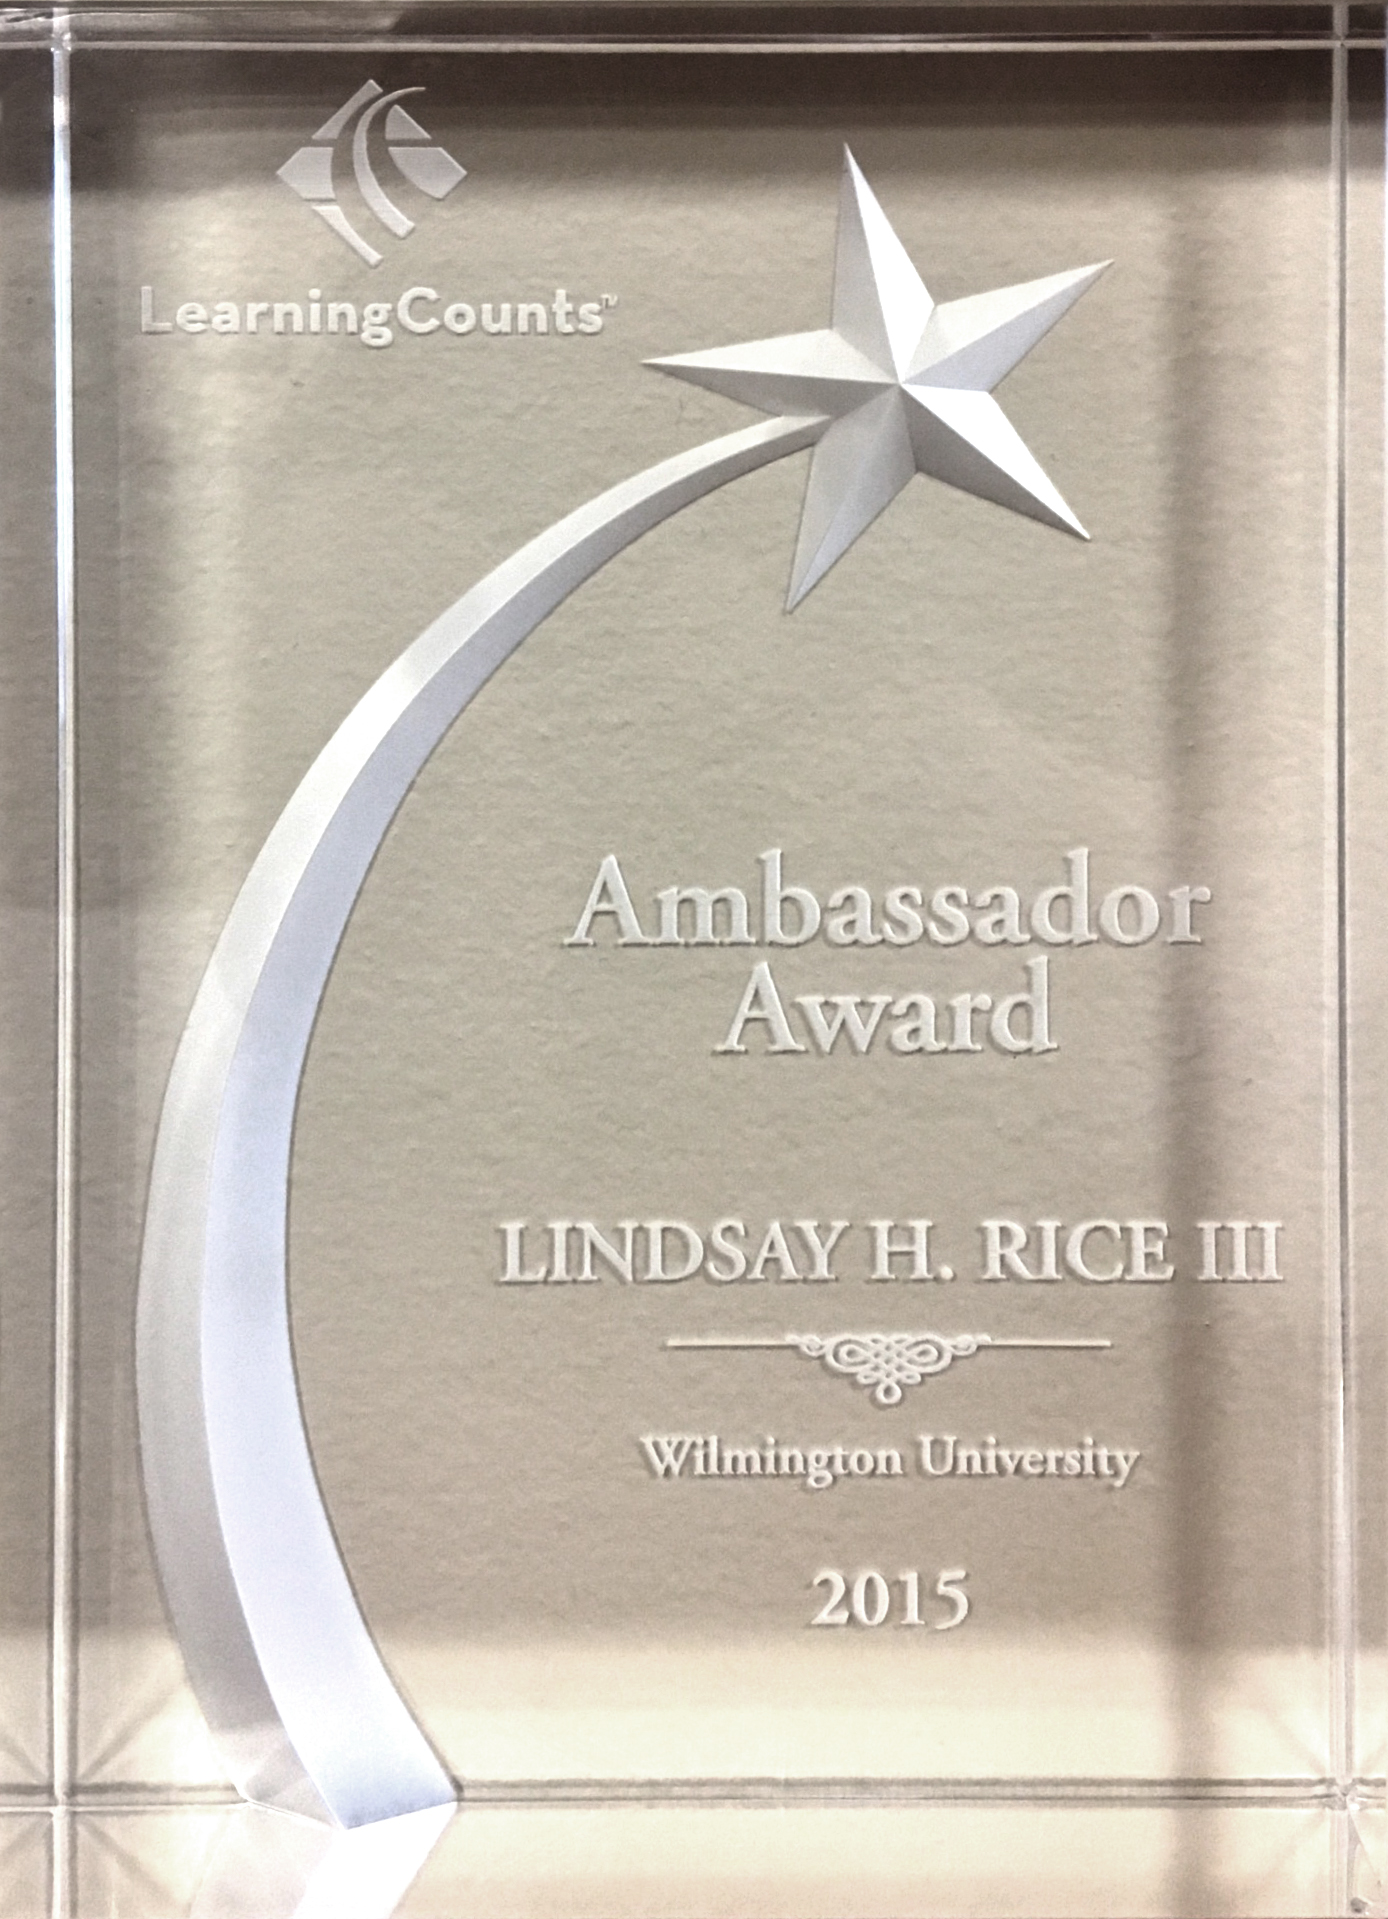 2015 LearningCounts Ambassador Award - Lindsay H. Rice III